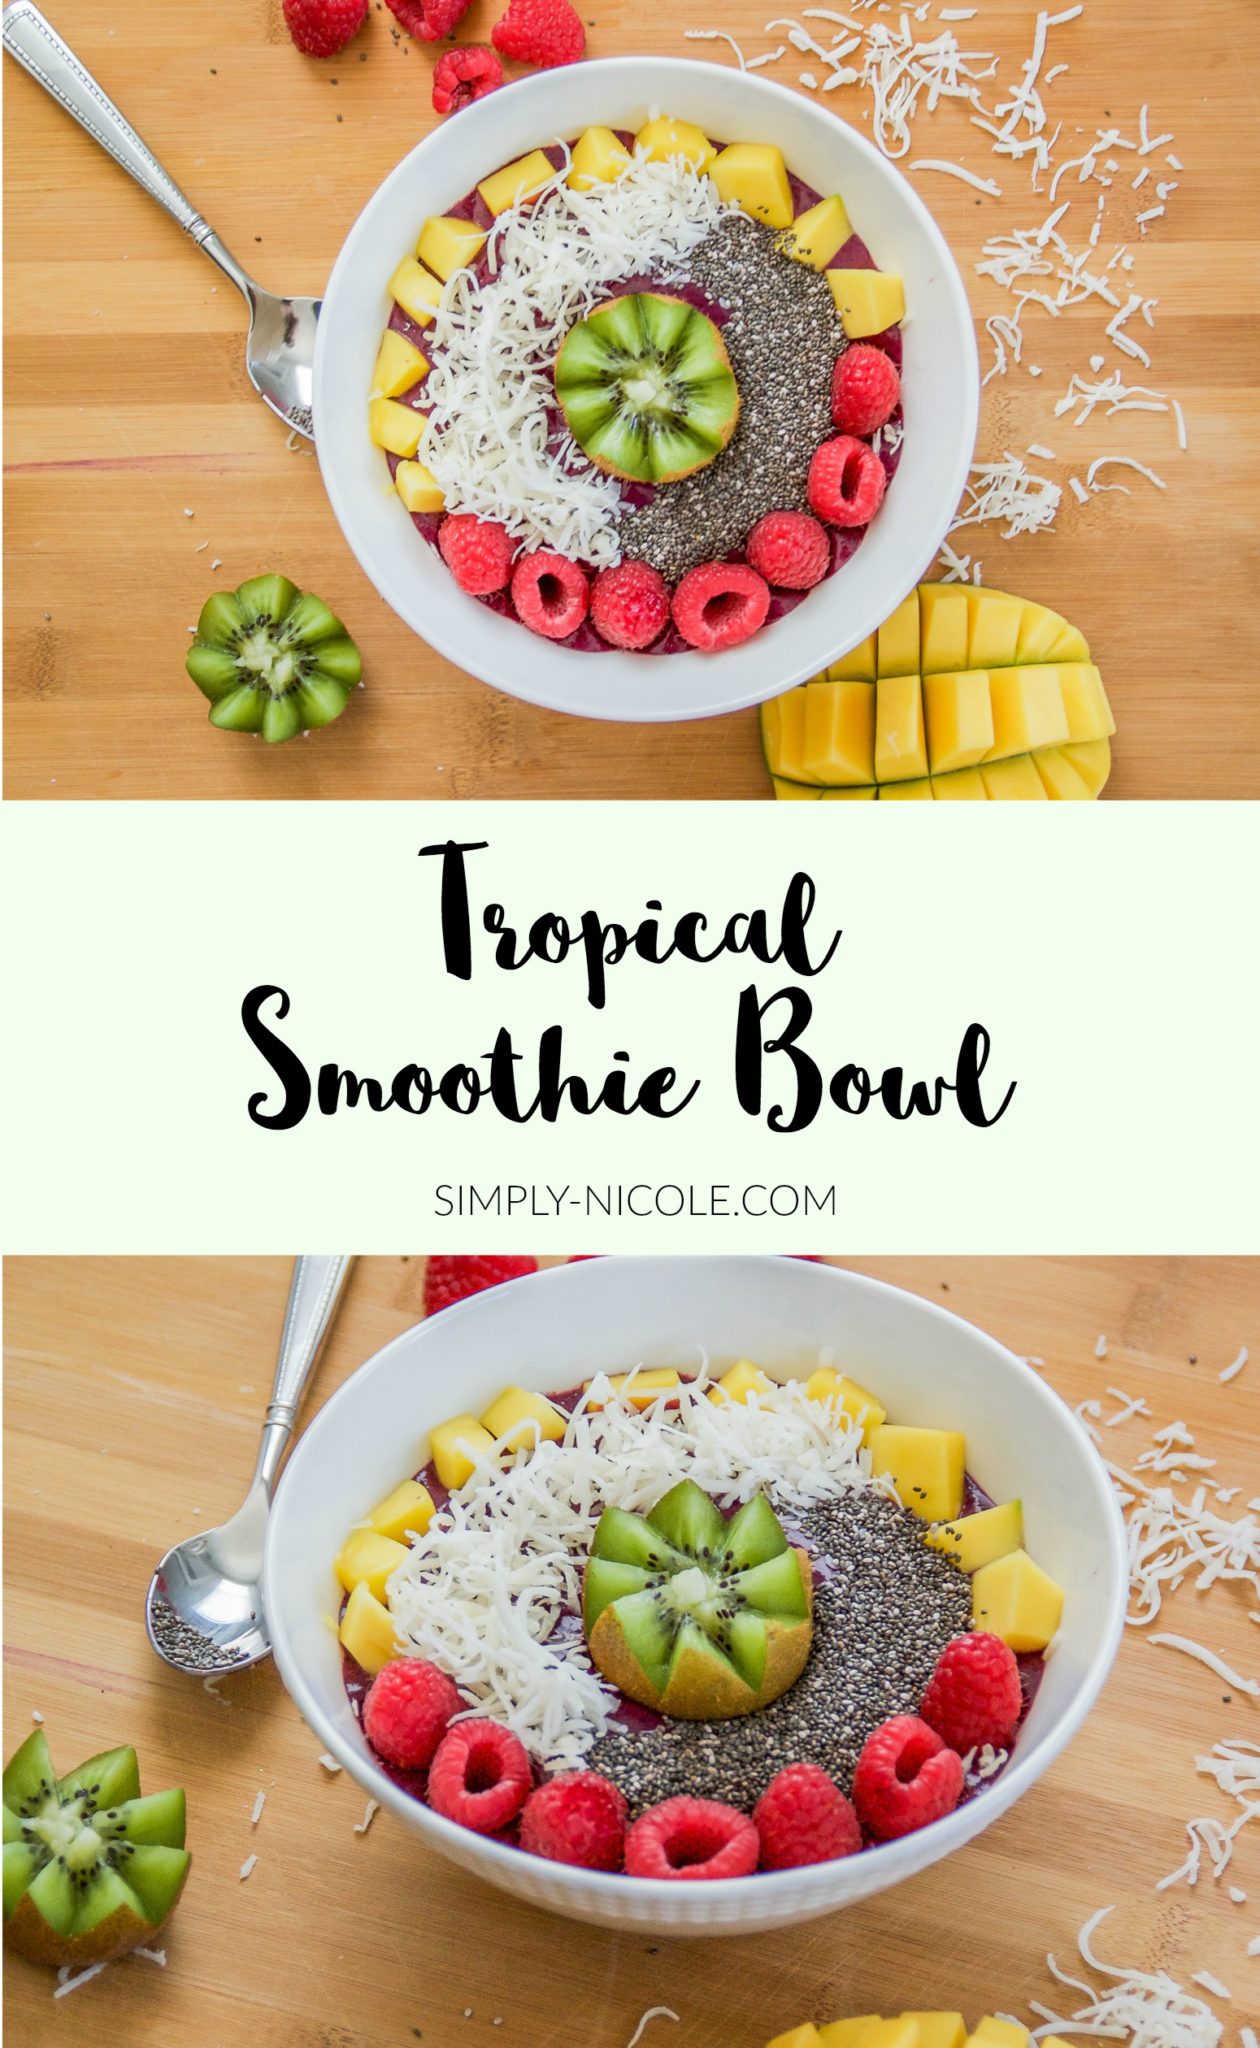 Tropical Smoothie Bowl Recipe via Simply-Nicole.com